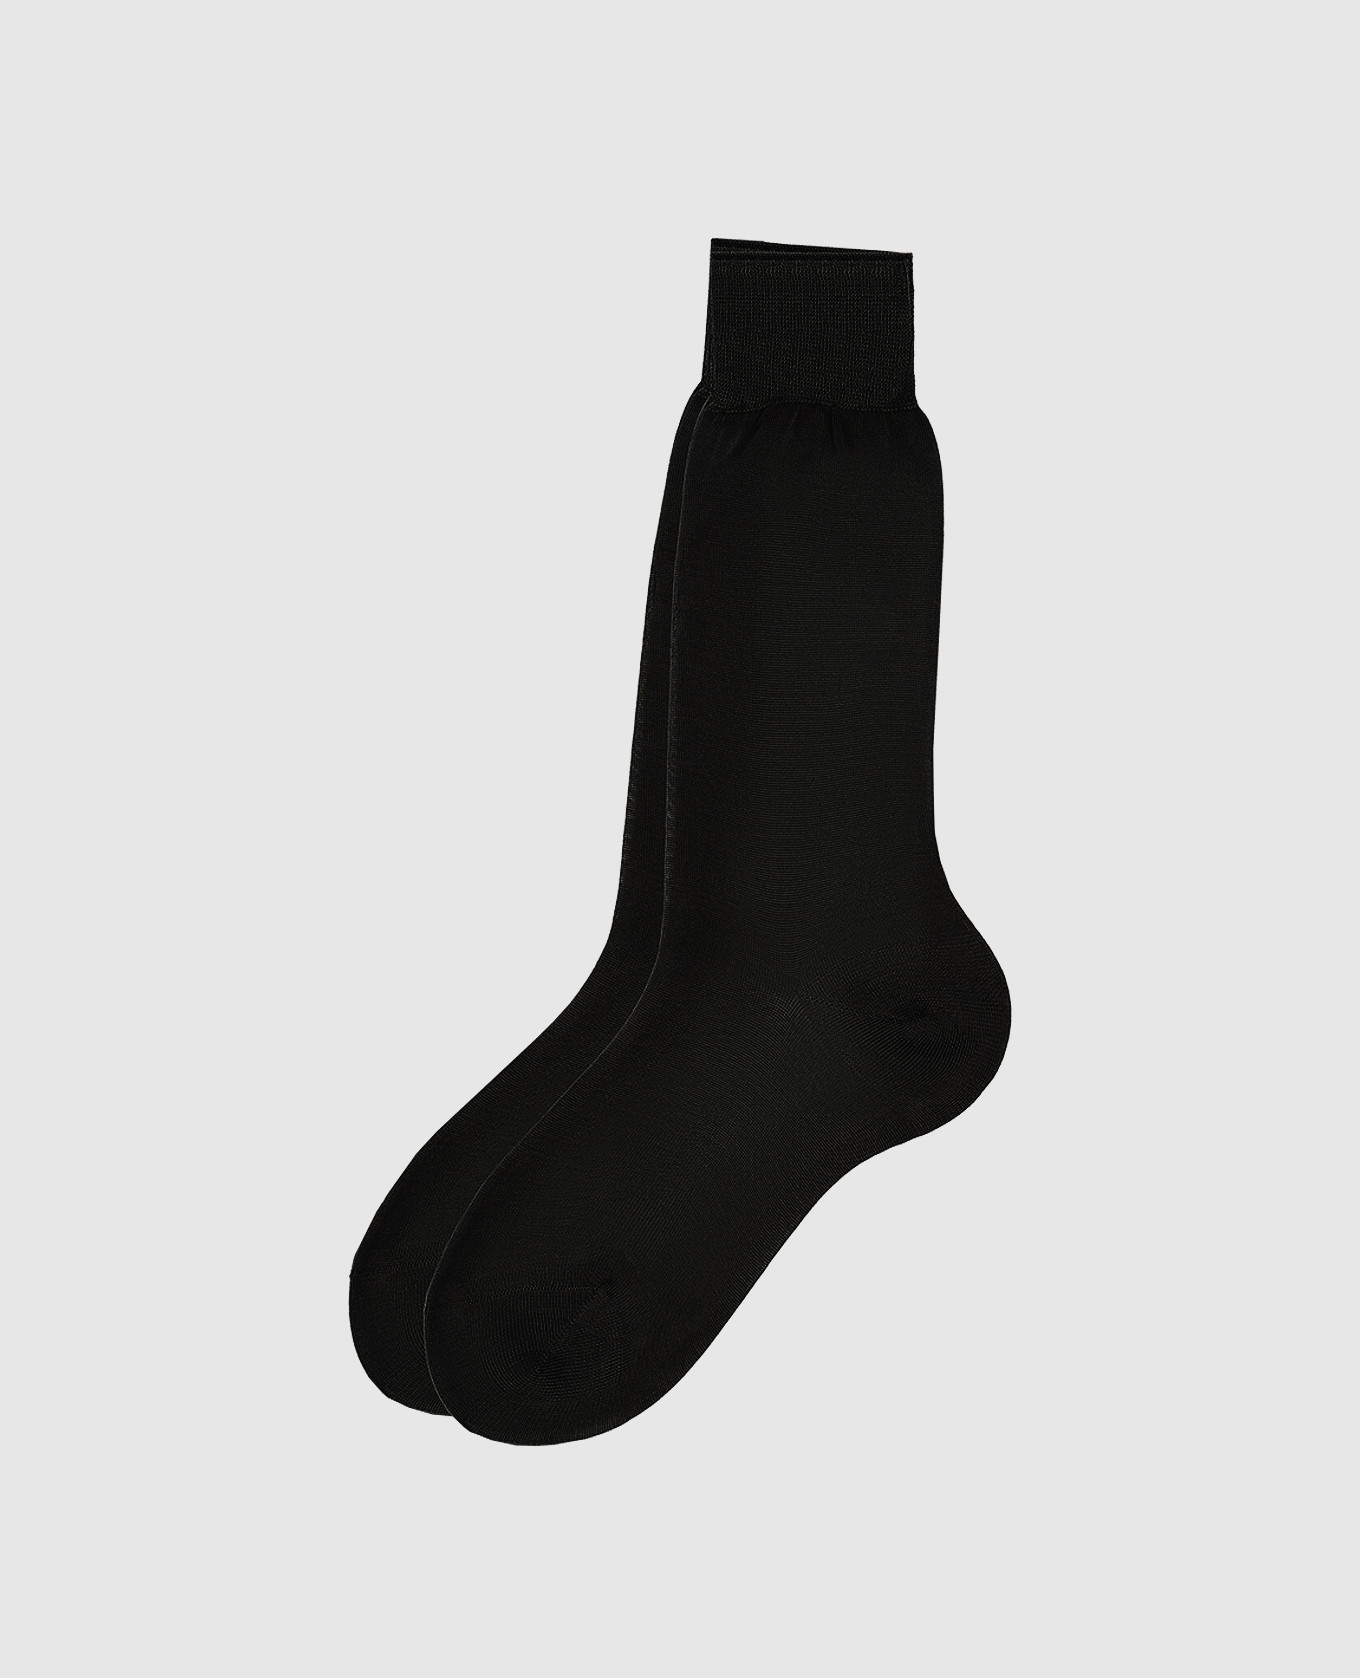 Black ribbed socks